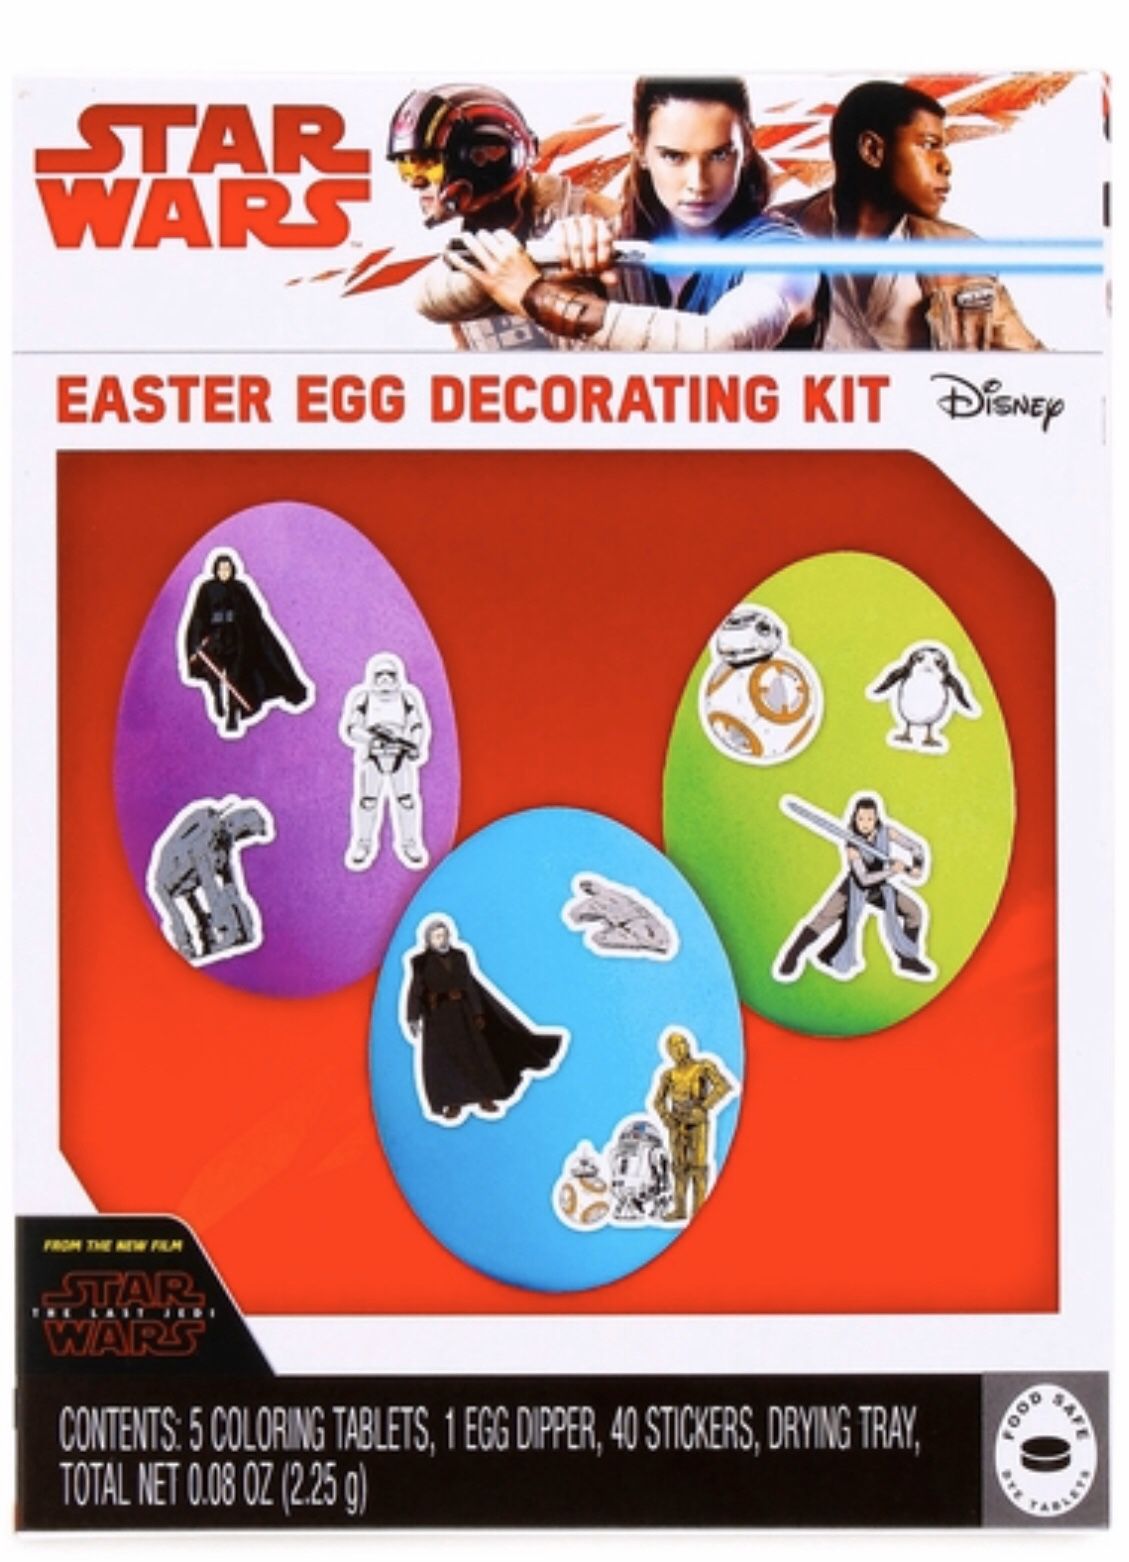 Easter Egg Decorating Kit - Star Wars, Shopkins, Despicable Me